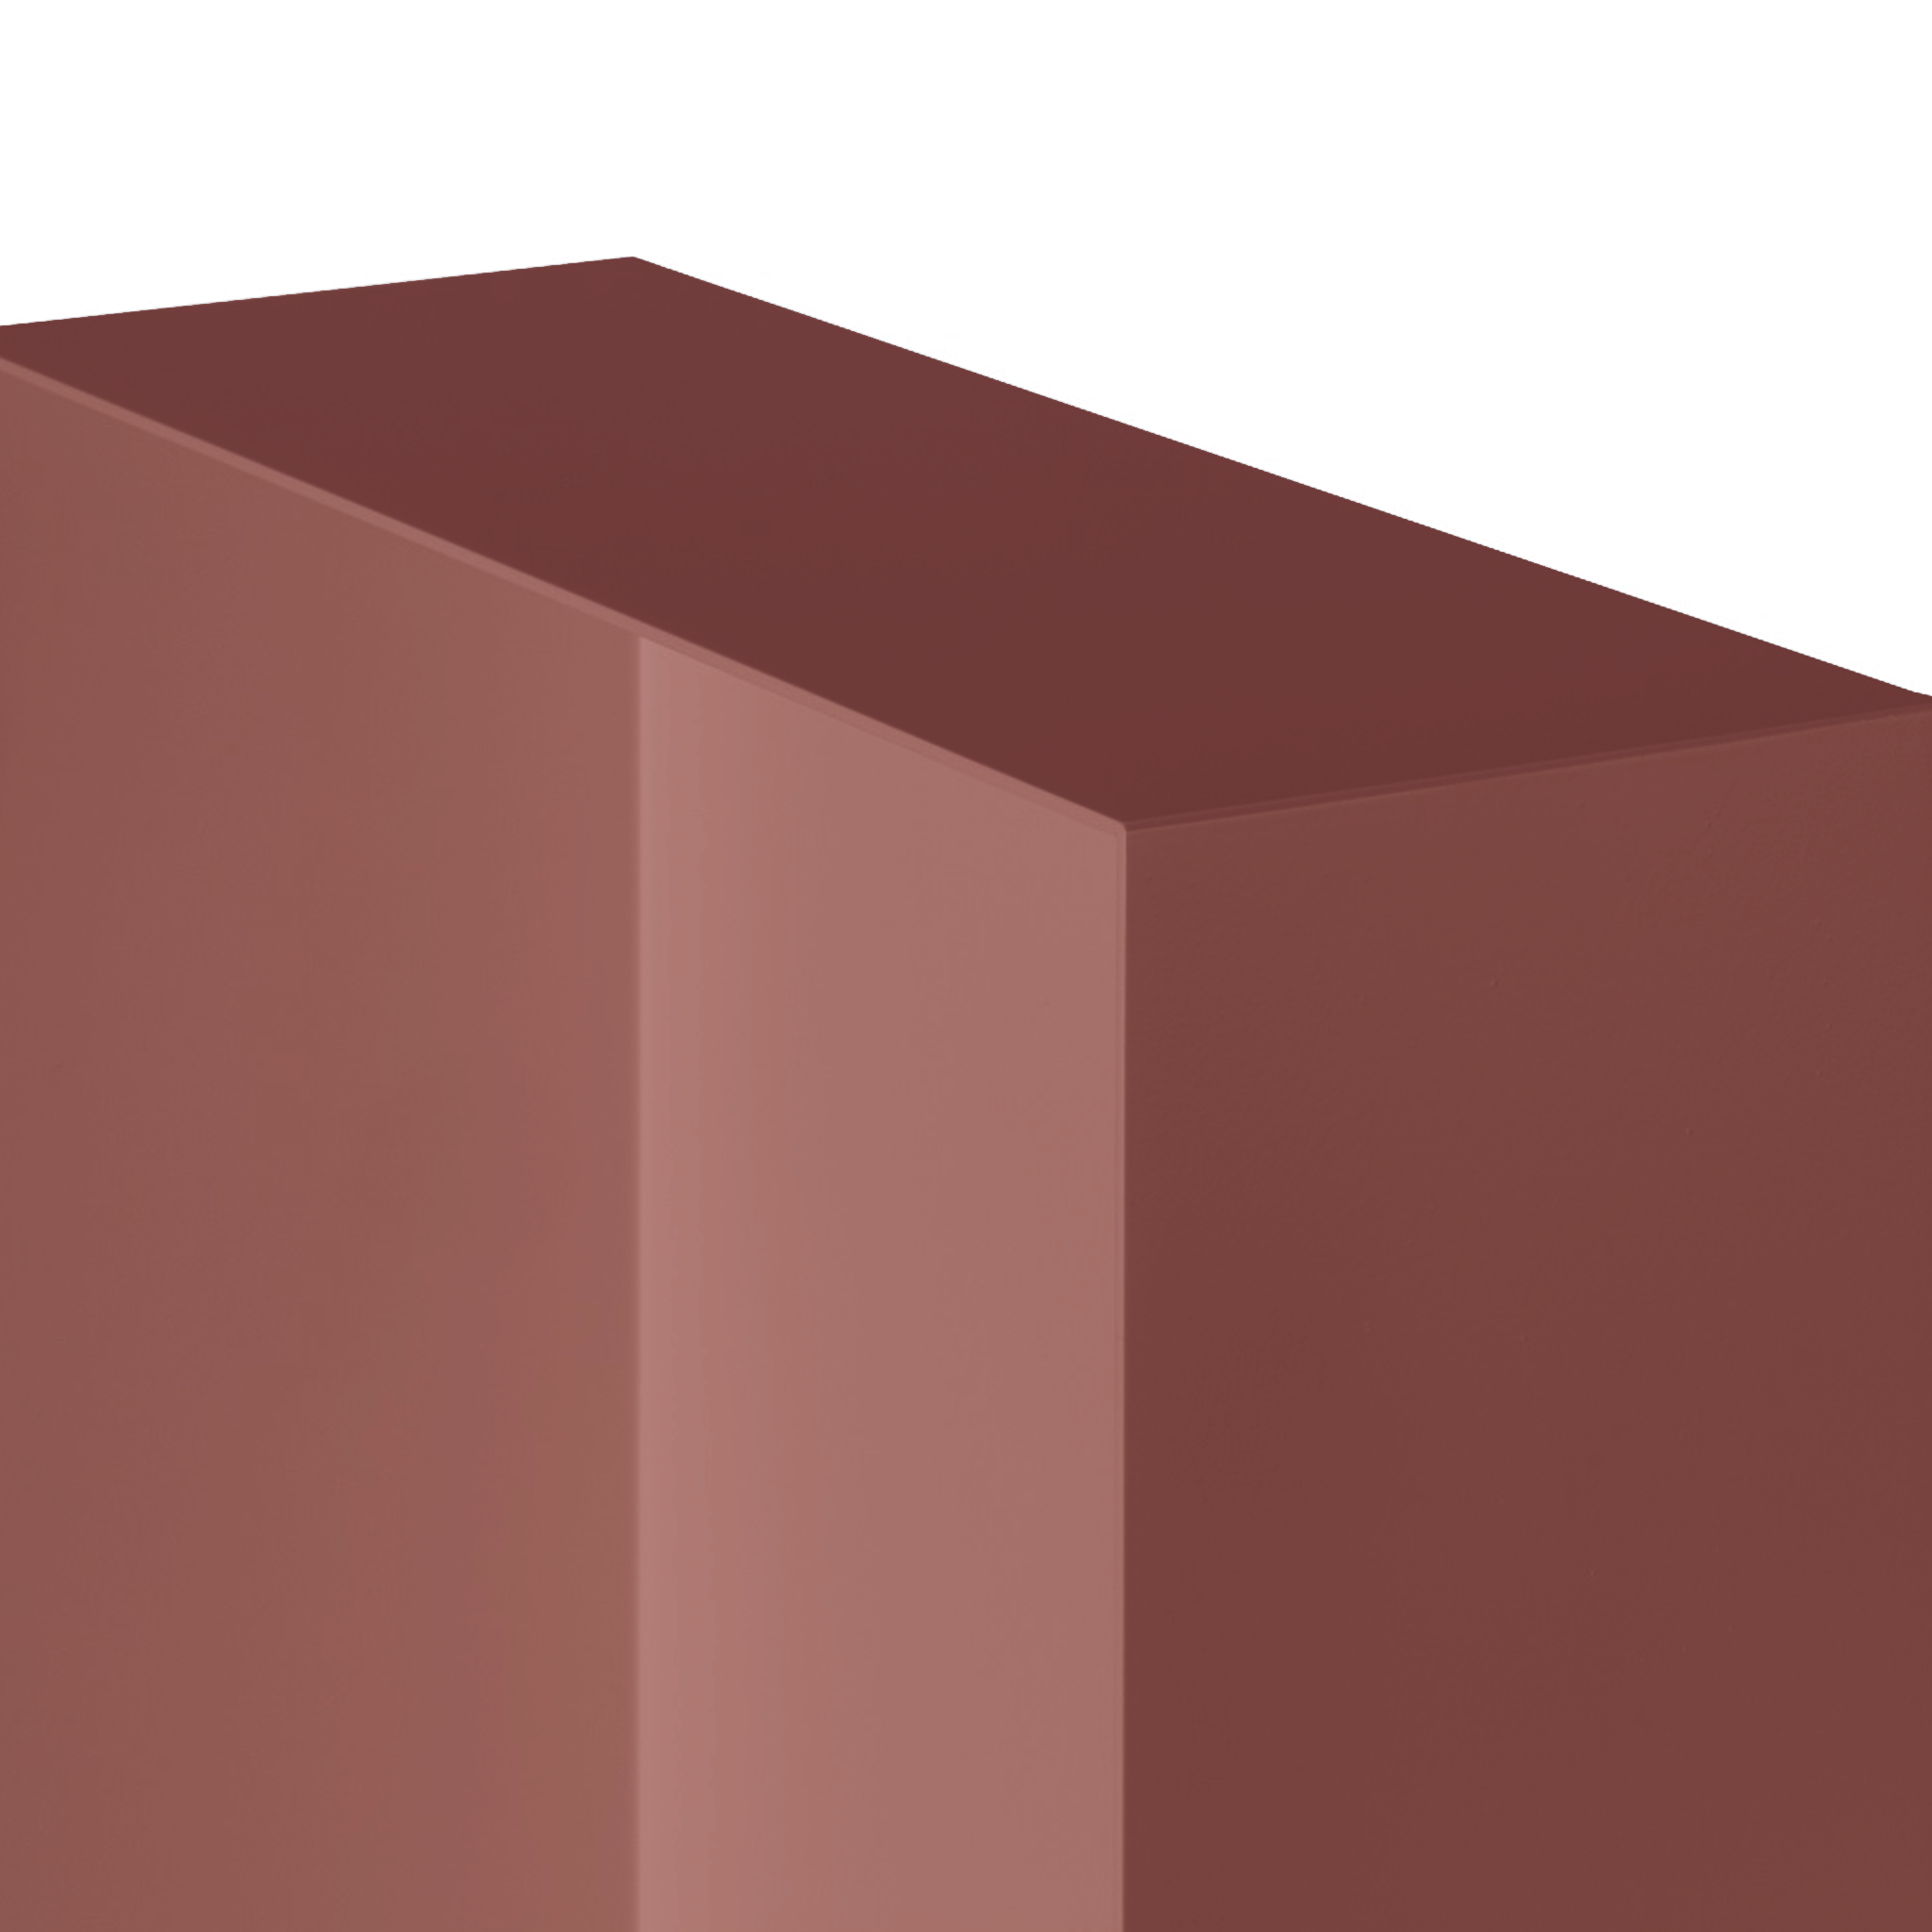 Valli Home – V-Box, Nicchia portaoggetti in Metallo smaltato color Rosso KK114, Misura 30X60 P. 10 cm – V-BOX.MLLO.30X60.114